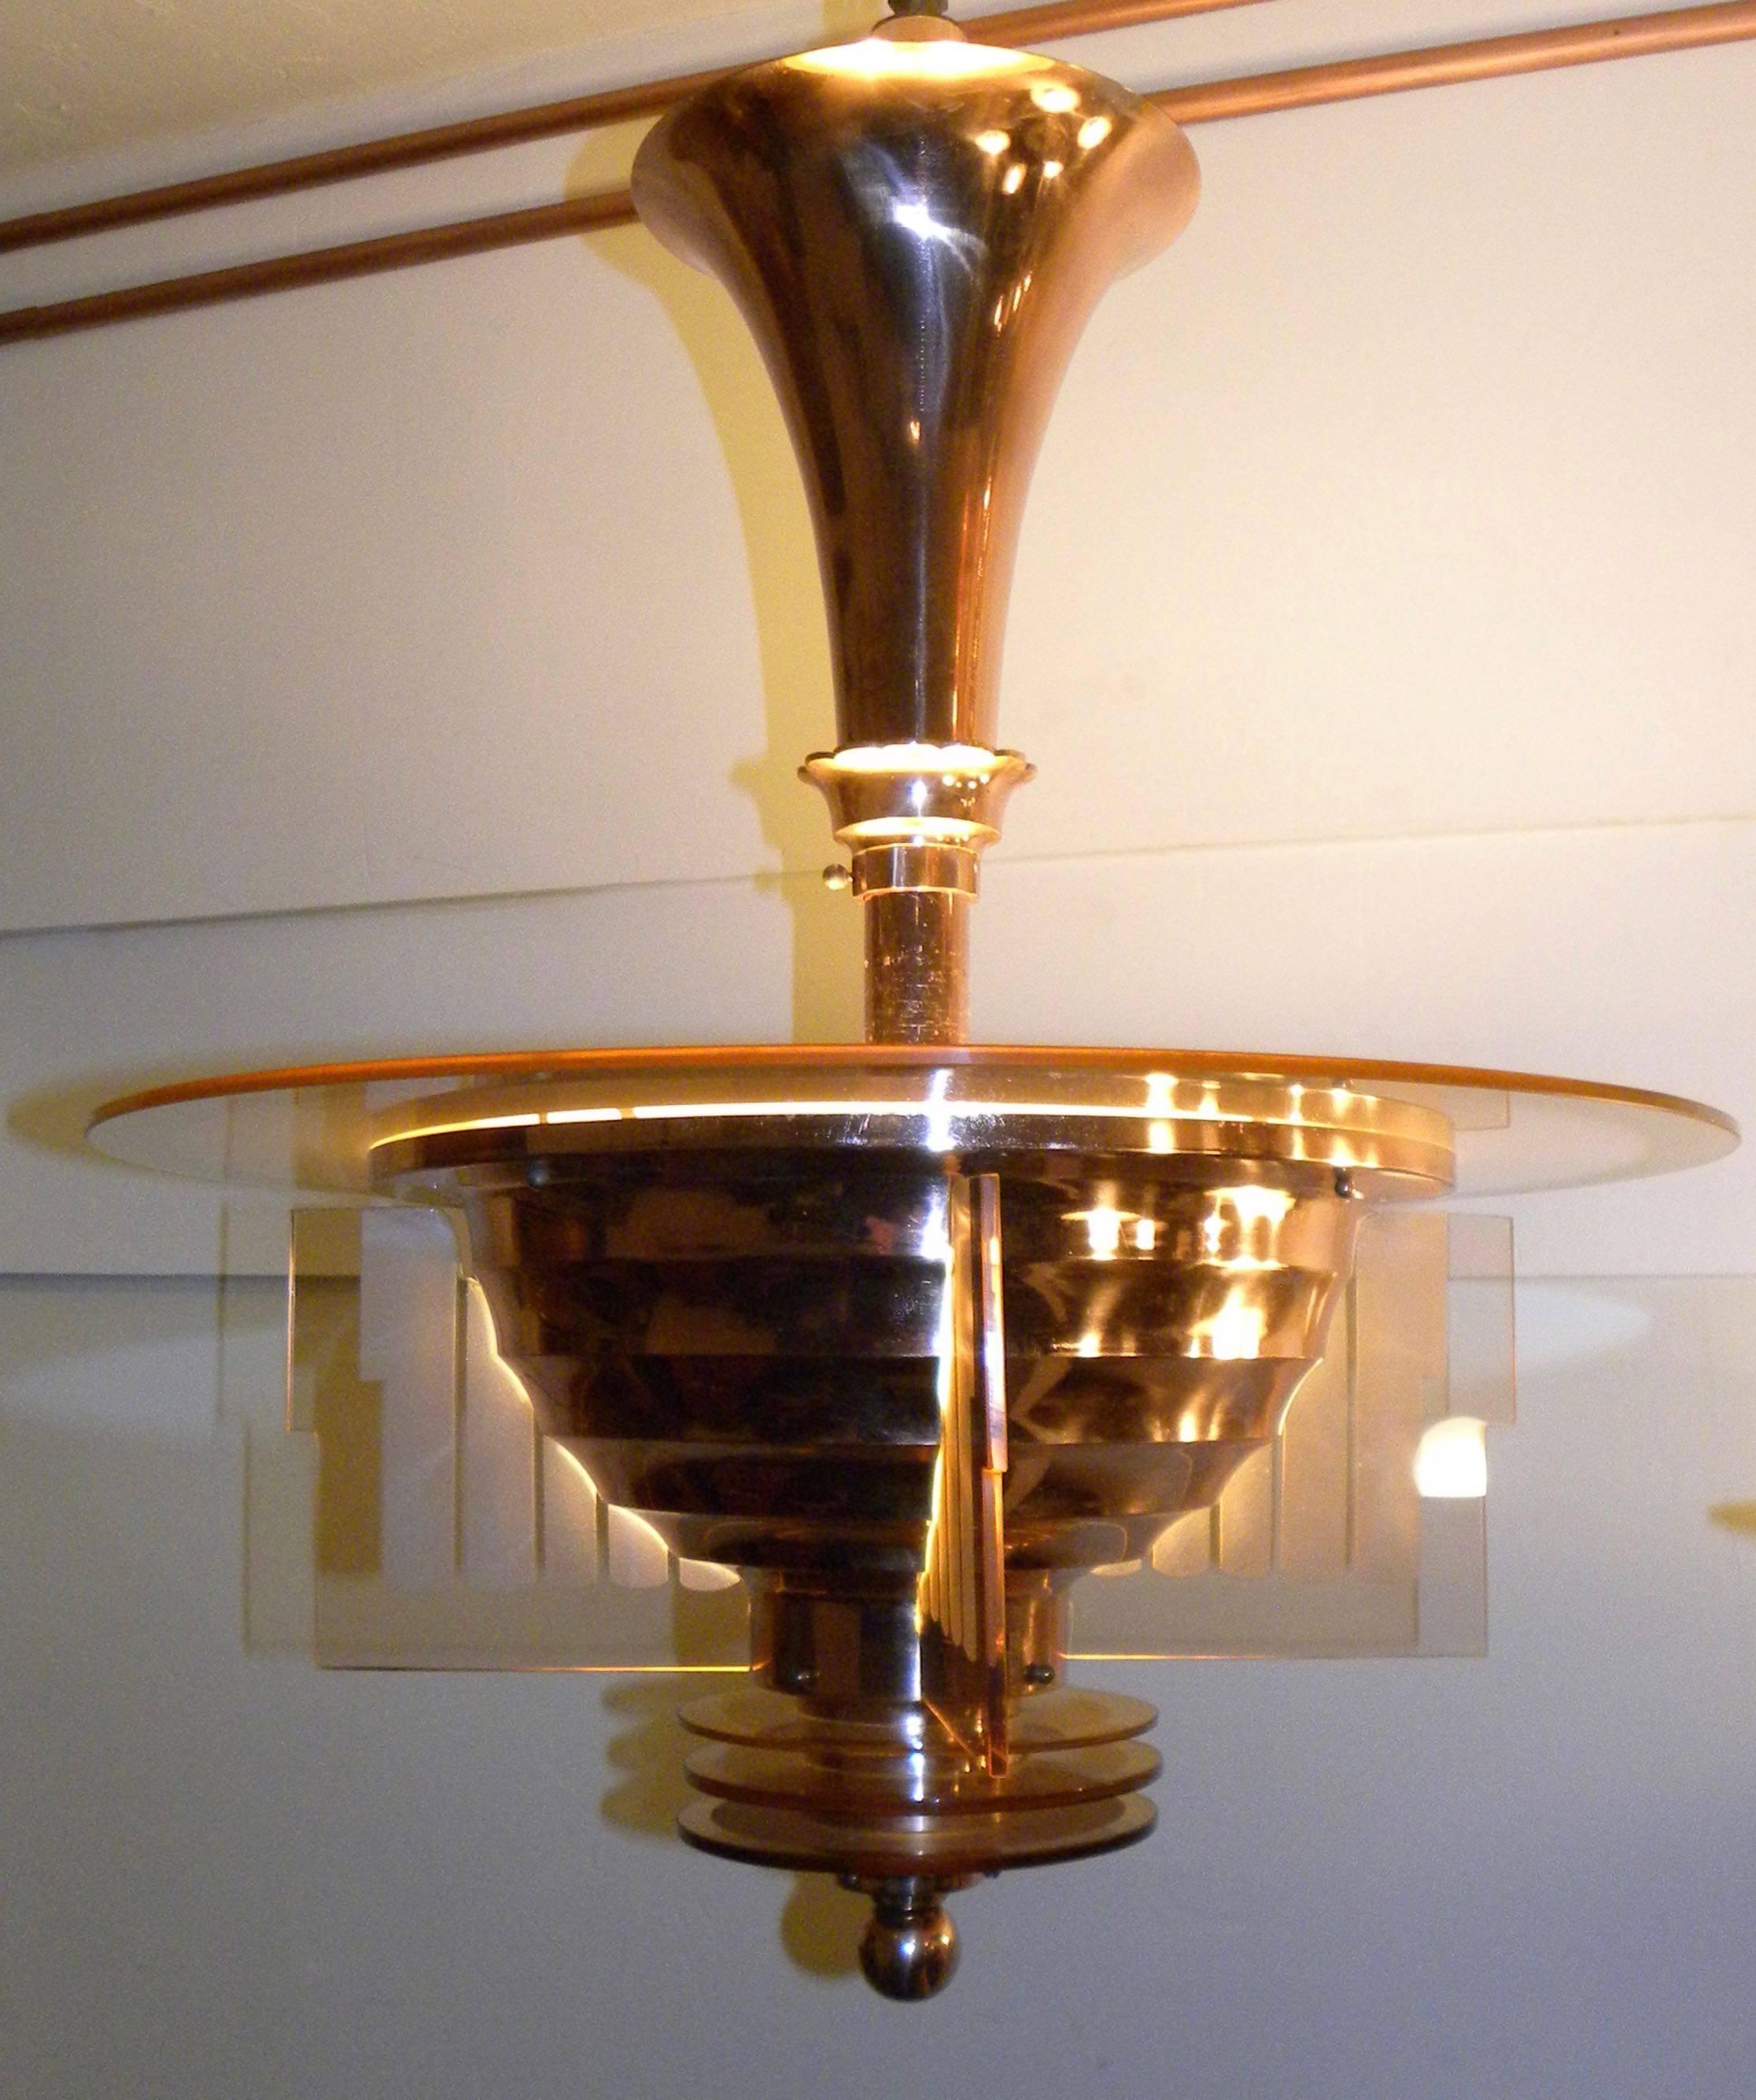 Spectaculaire:: dynamique et épuré:: ce luminaire d'Henri Petitot est l'un des plus beaux exemples de l'Art Déco français. Façonné dans un cuivre riche qui se marie magnifiquement avec le verre pêche gravé et avec les 